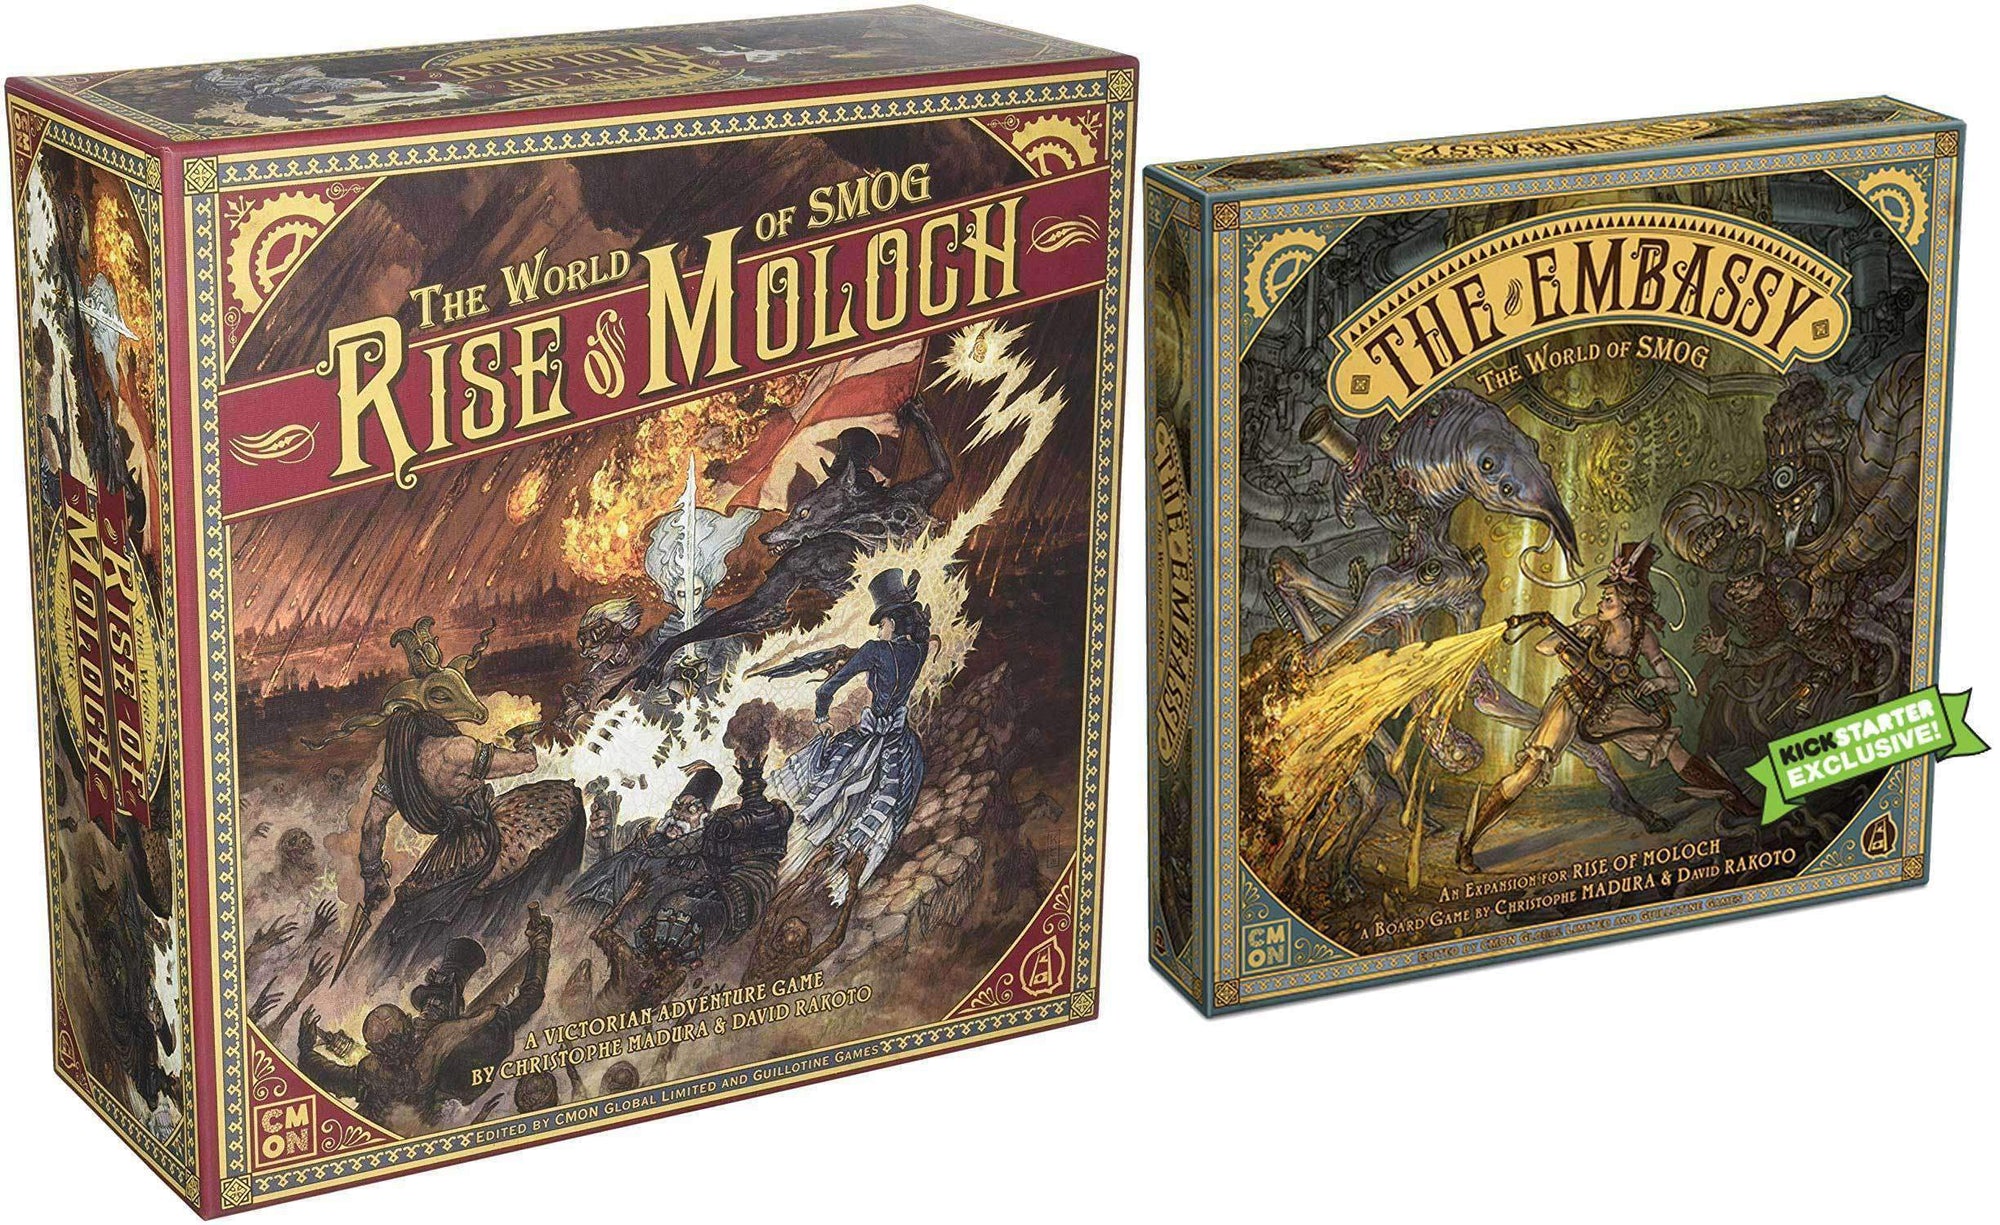 World of Smog: Rise of Moloch con espansione dell'ambasciata (Kickstarter Special) Kickstarter Board Game CMON Limitato